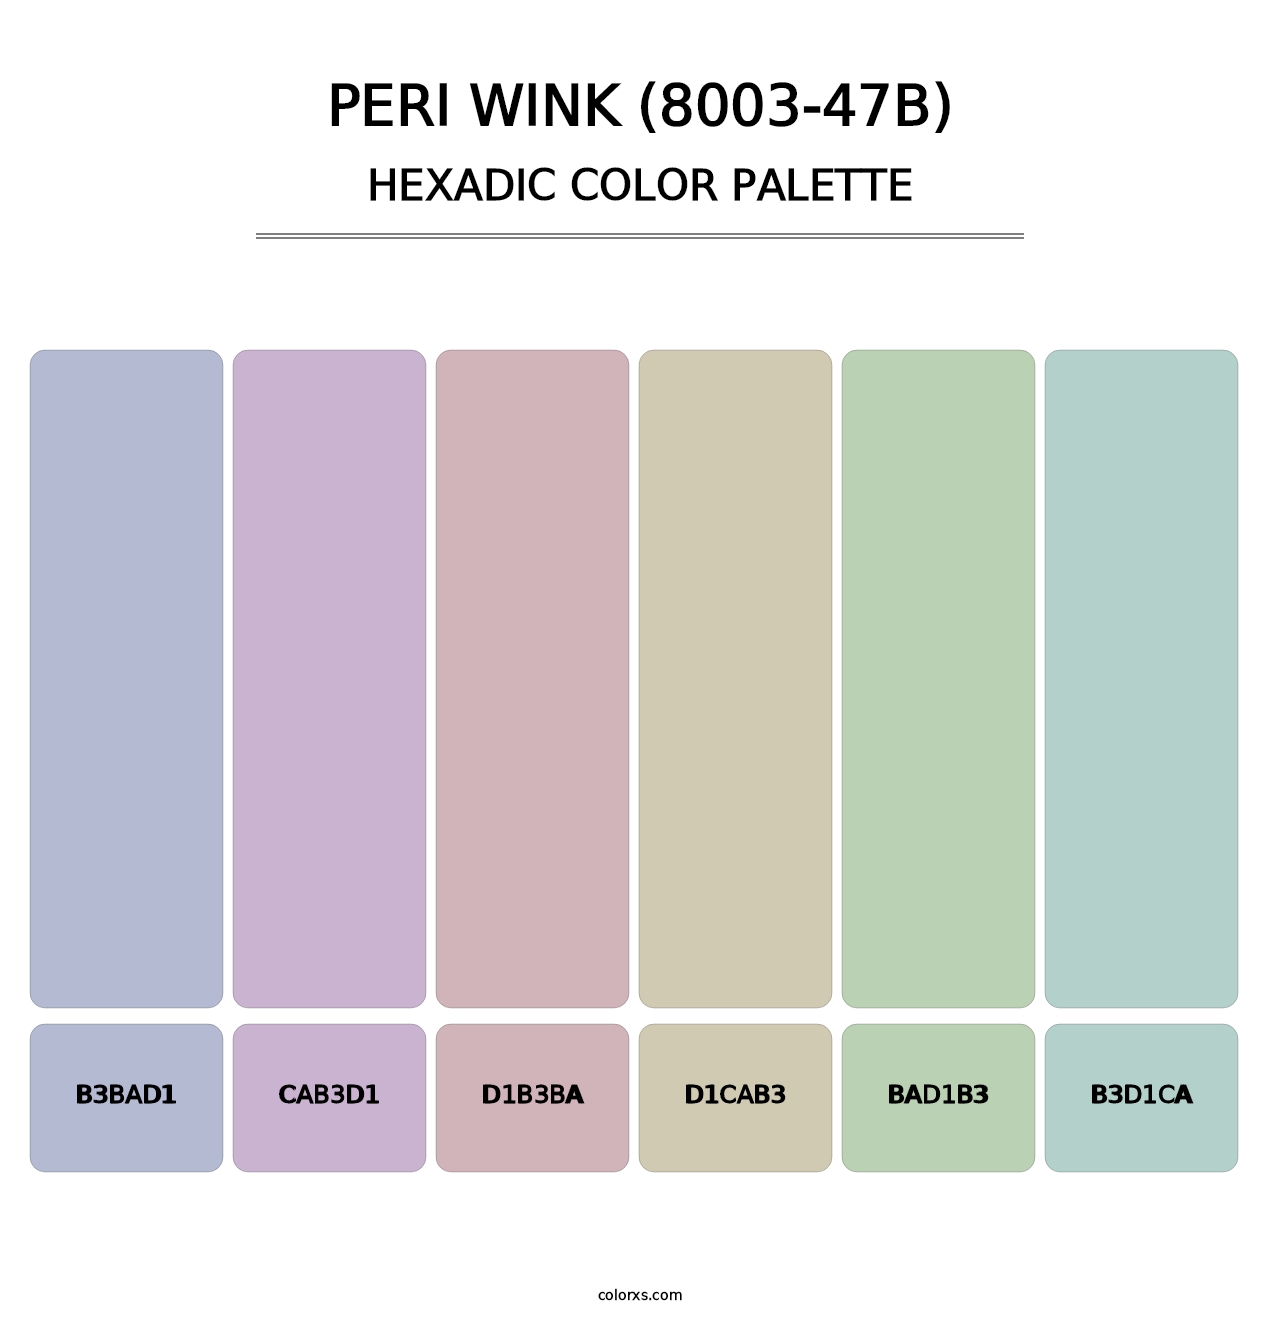 Peri Wink (8003-47B) - Hexadic Color Palette